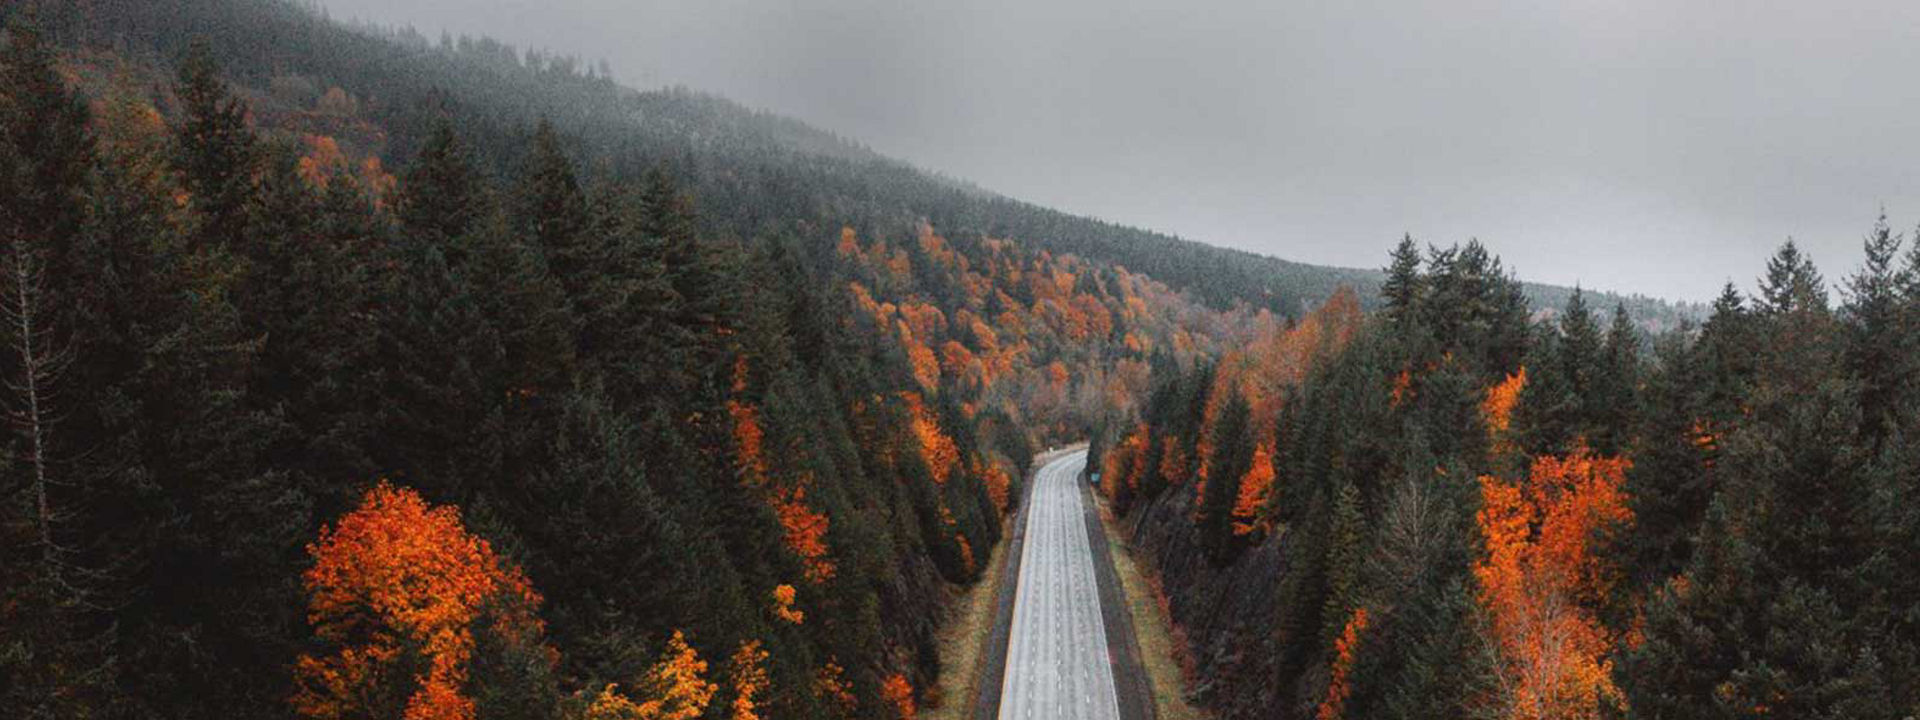 Tento obrázek zachycuje prázdnou dálnici vedoucí podzimním lesem, aby bylo vidět, že Weather Control je pro všechna roční období